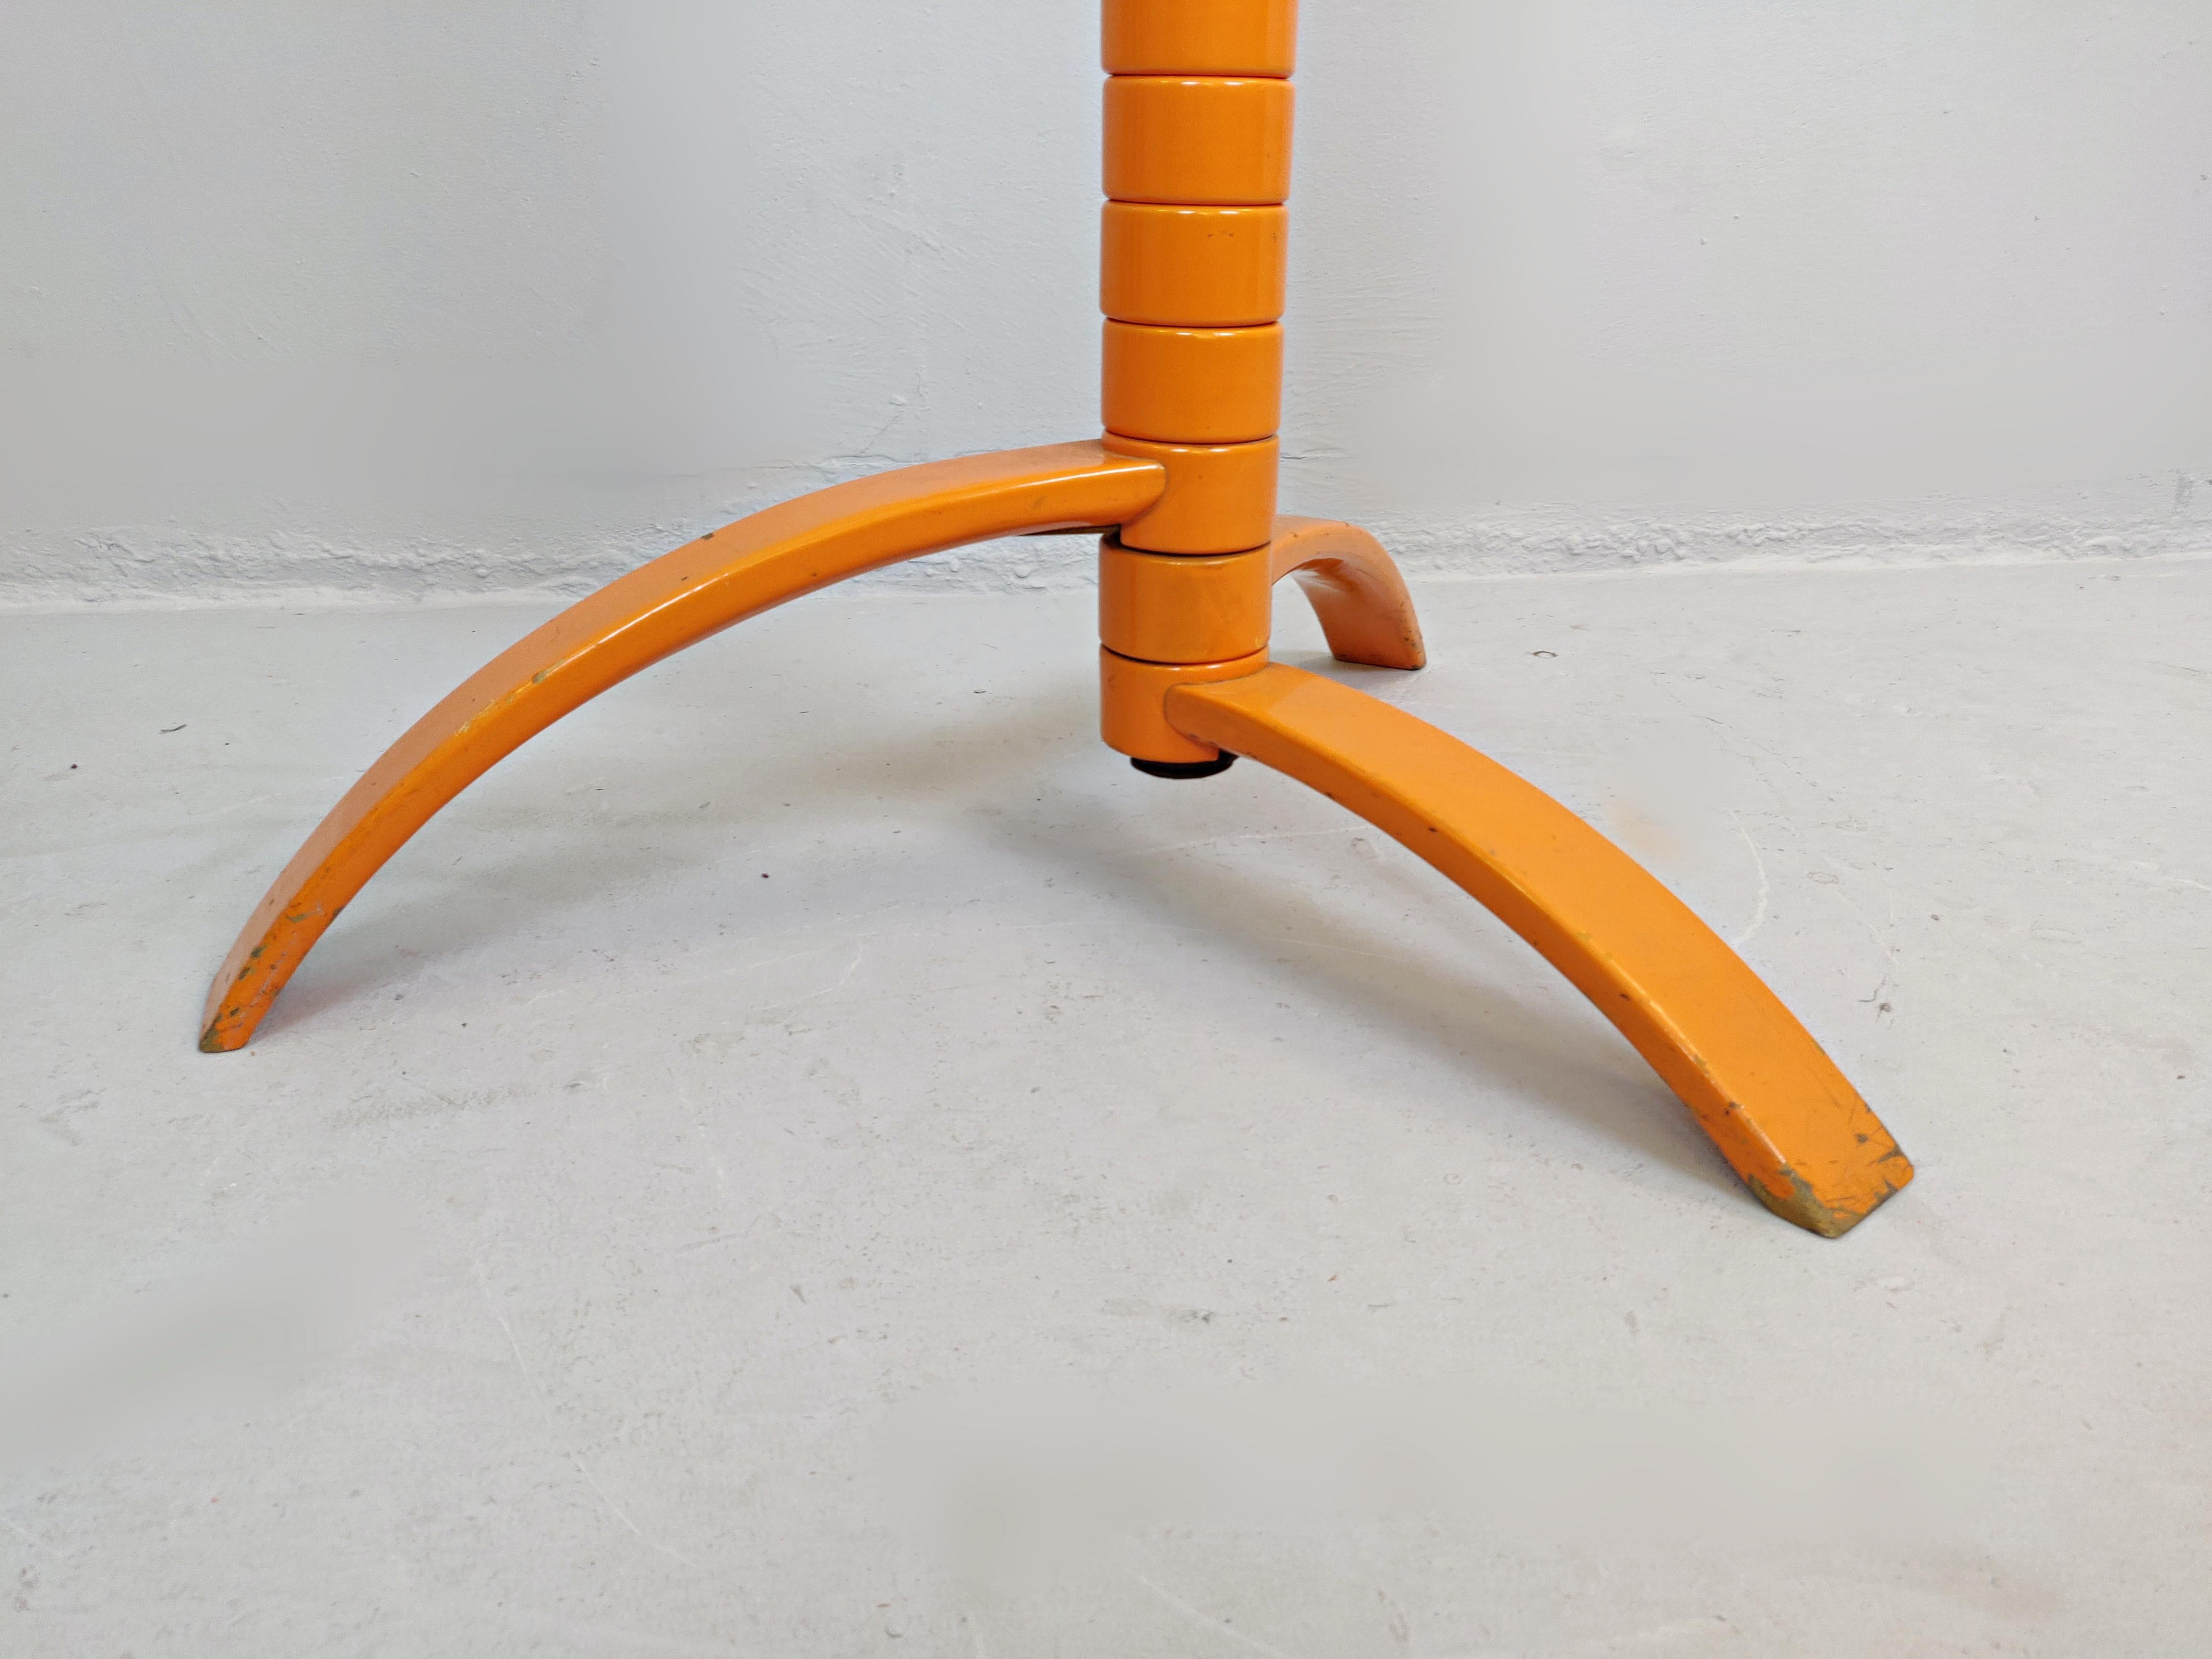 Skulpturaler Garderobenständer aus orange lackiertem Holz von Bruce Tippett Renna.